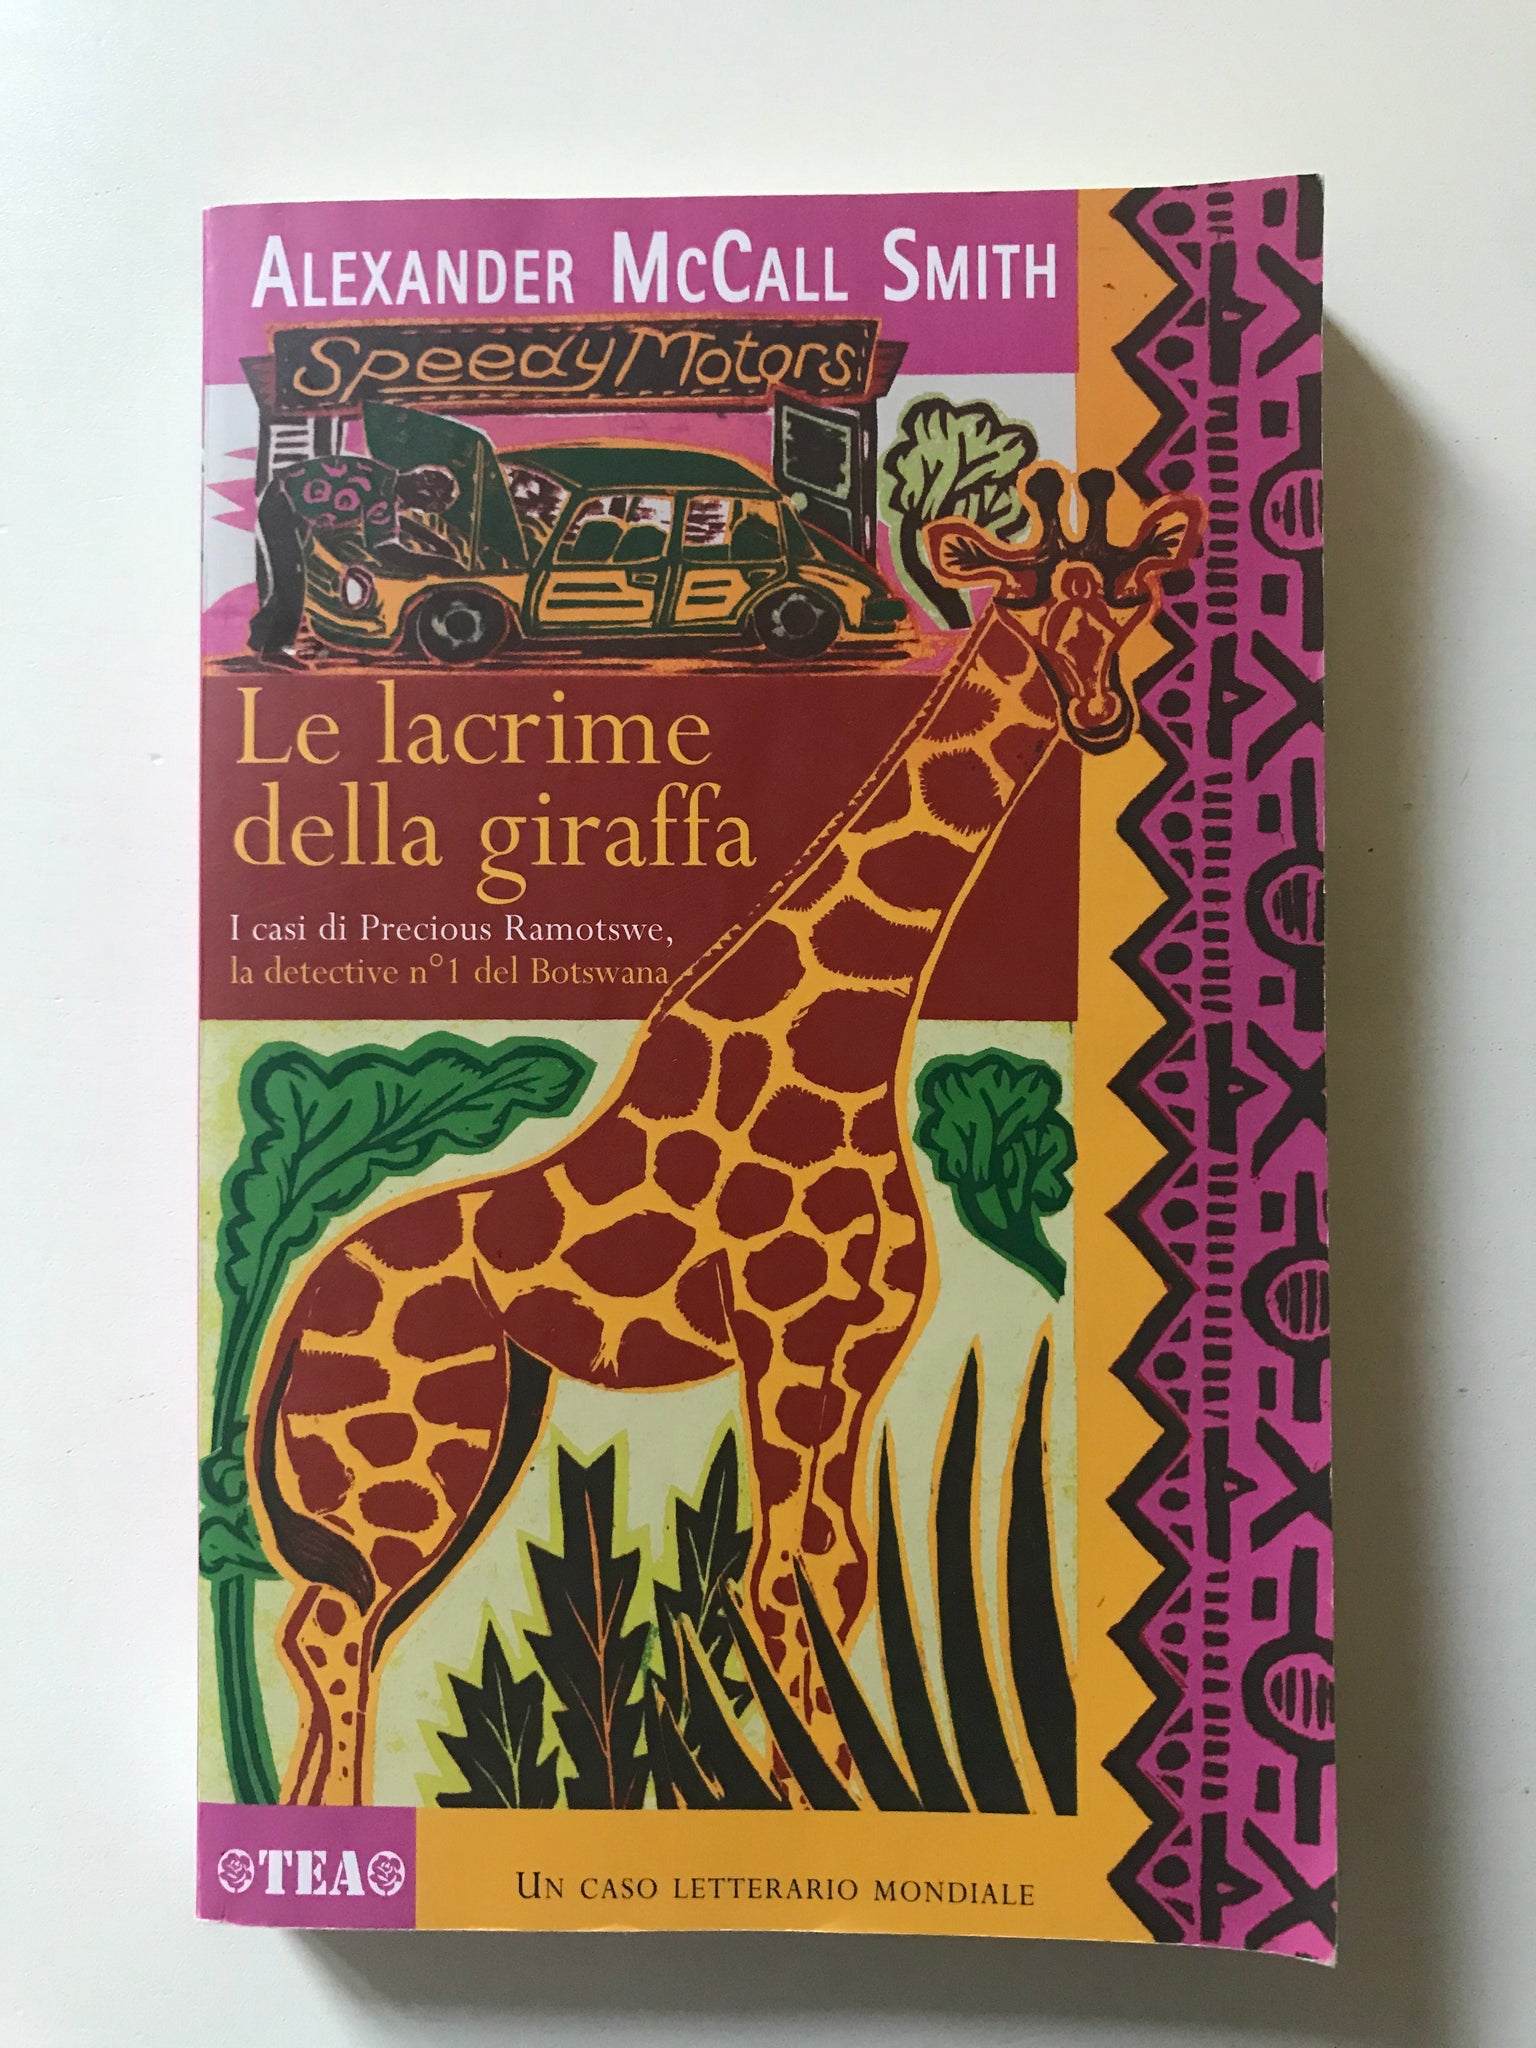 Alexander McCall Smith - Le lacrime della giraffa